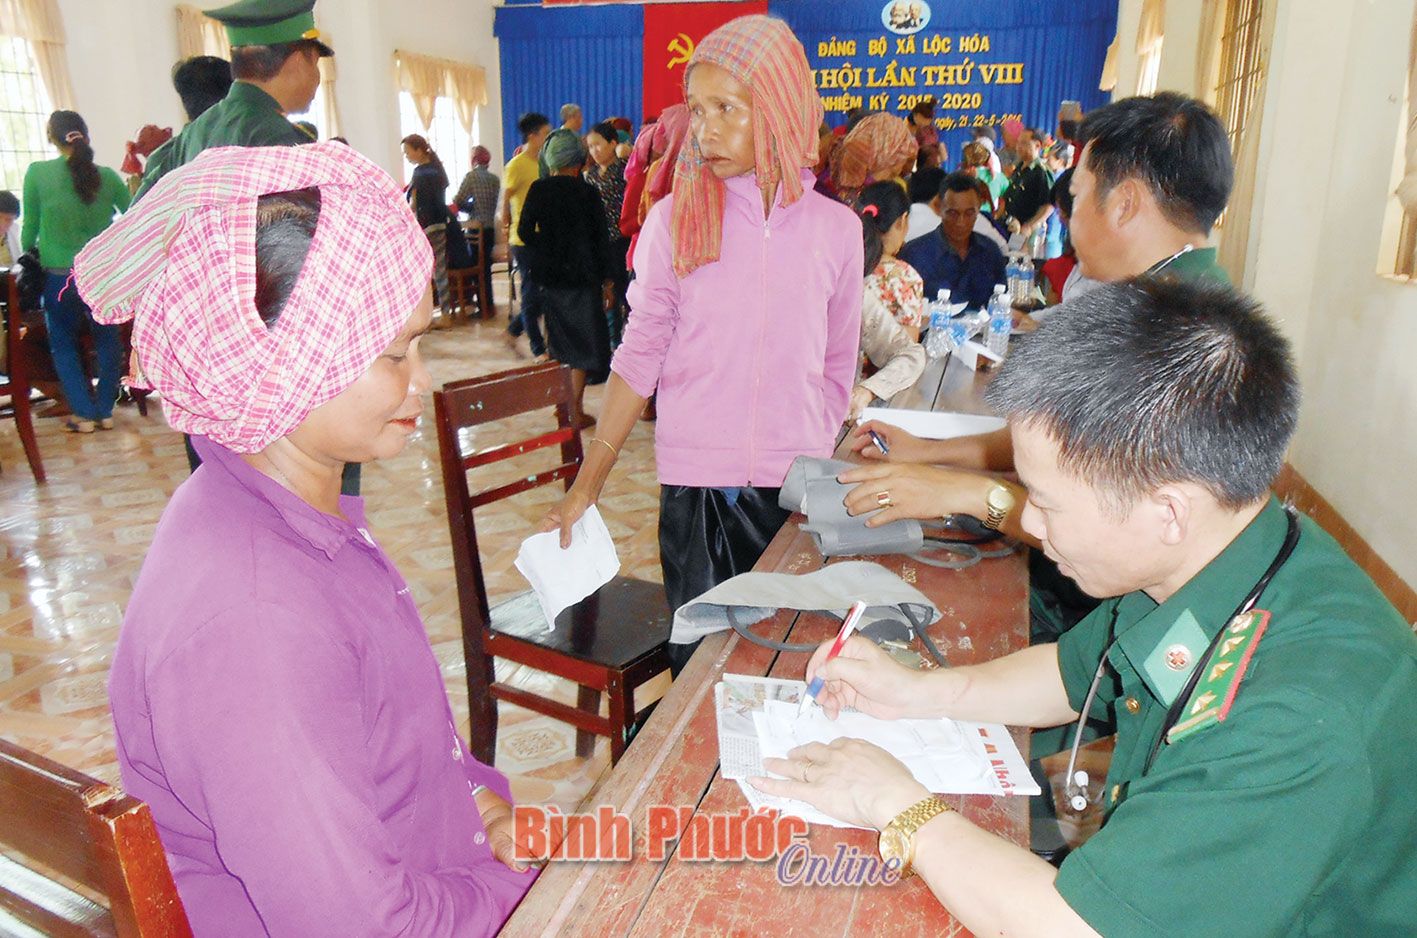 Phụ nữ DTTS Lộc Hòa tham gia bảo vệ biên giới